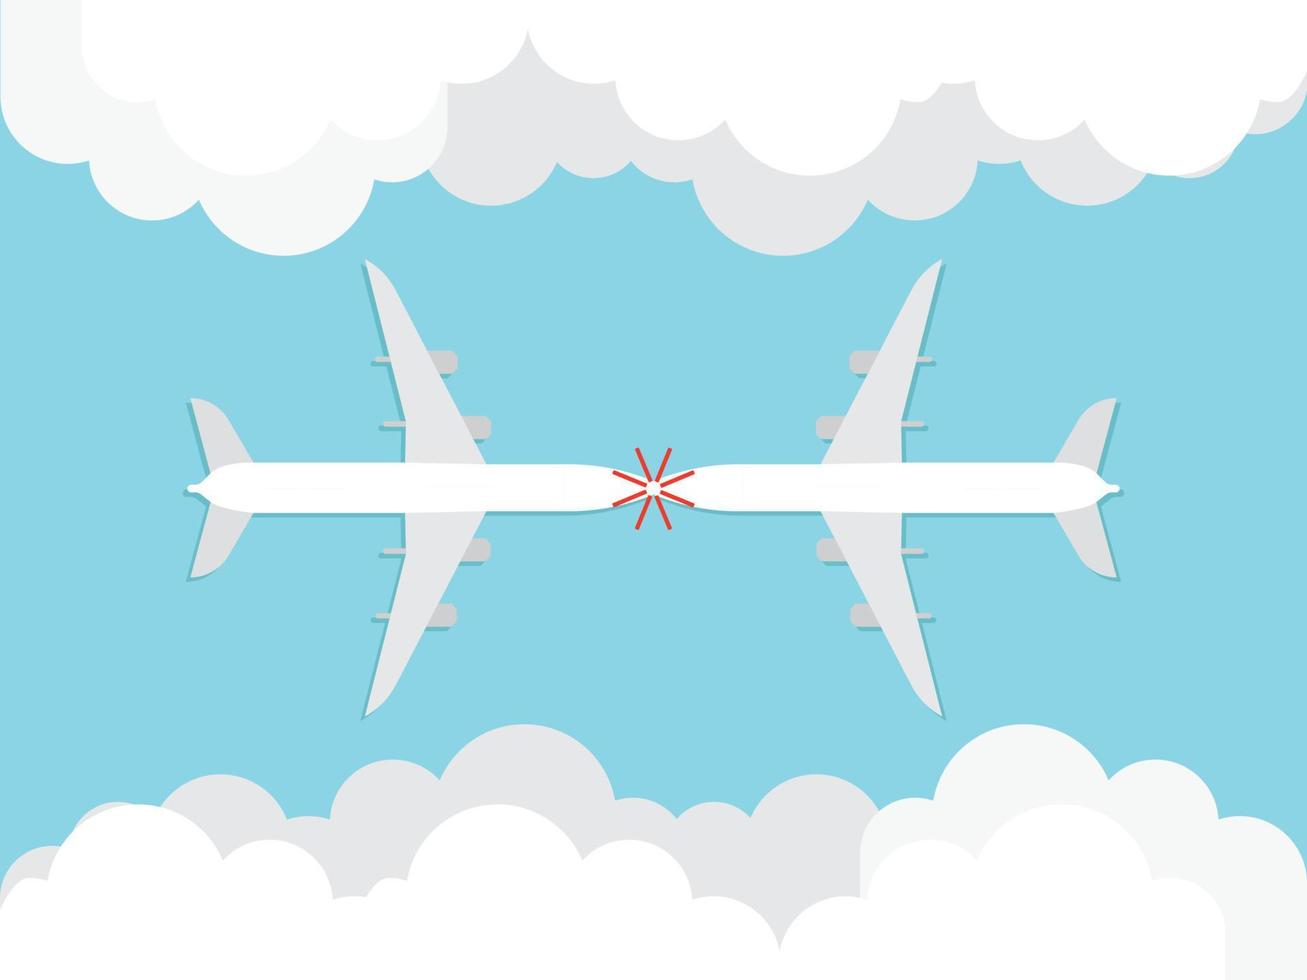 los aviones que salen de las nubes chocan. vector